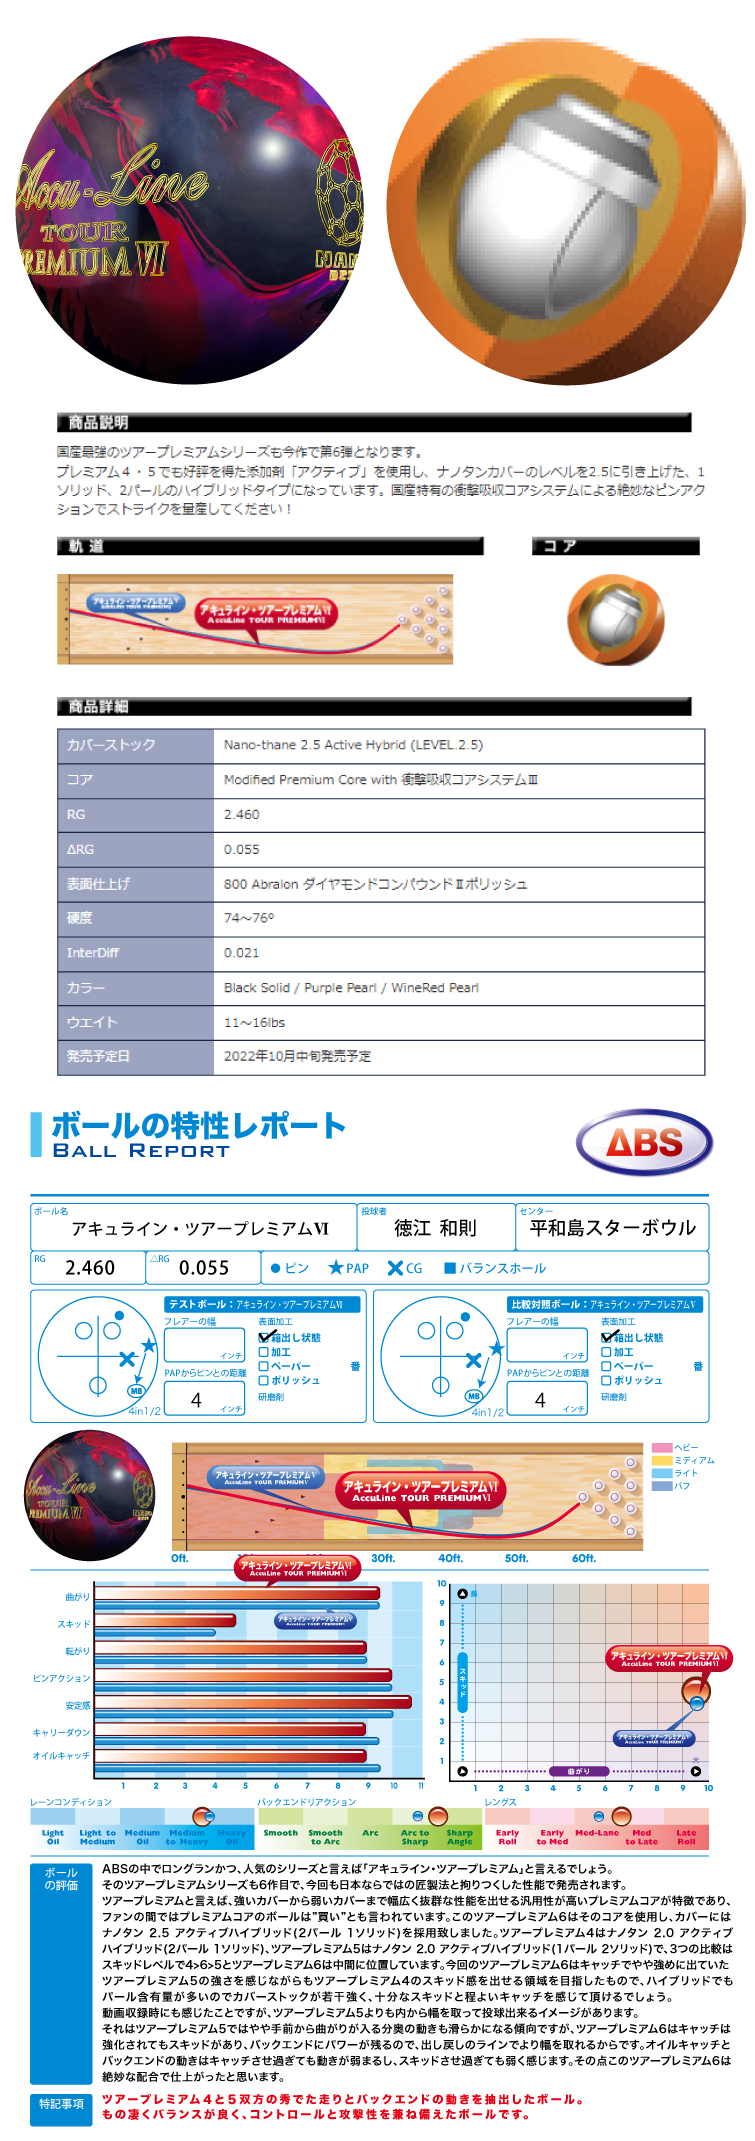 ボウリングボール ABS NANODESU】ナノデス・アキュラインツアープレミアム6 Accu Line TOUR PREMIUM Ⅵ ボール  フタバプロショップオンライン